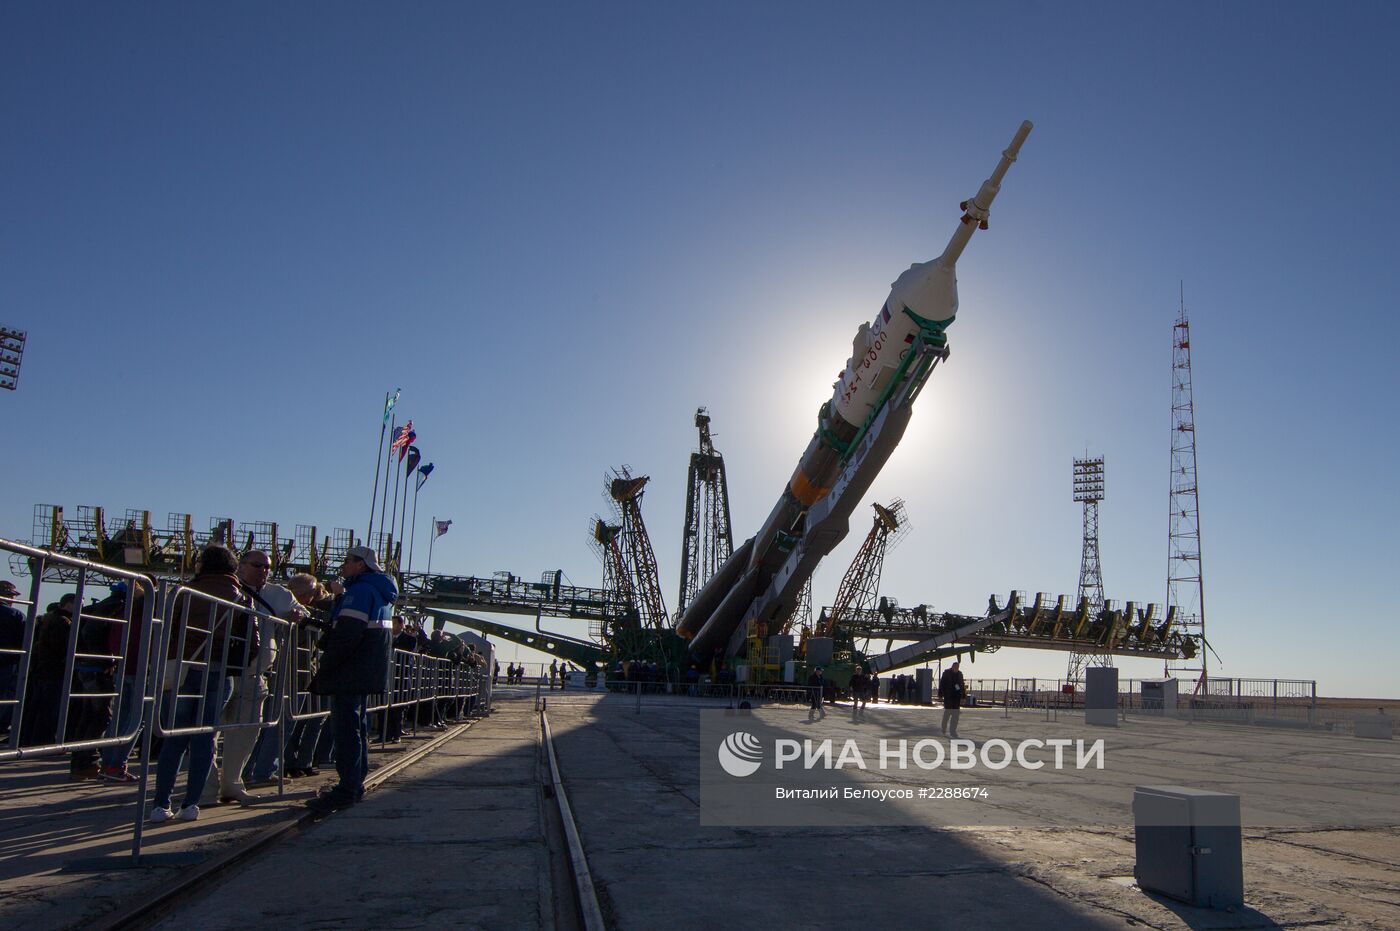 Вывоз ракеты "Союз-ФГ" с кораблем "Союз ТМА-10М"на старт